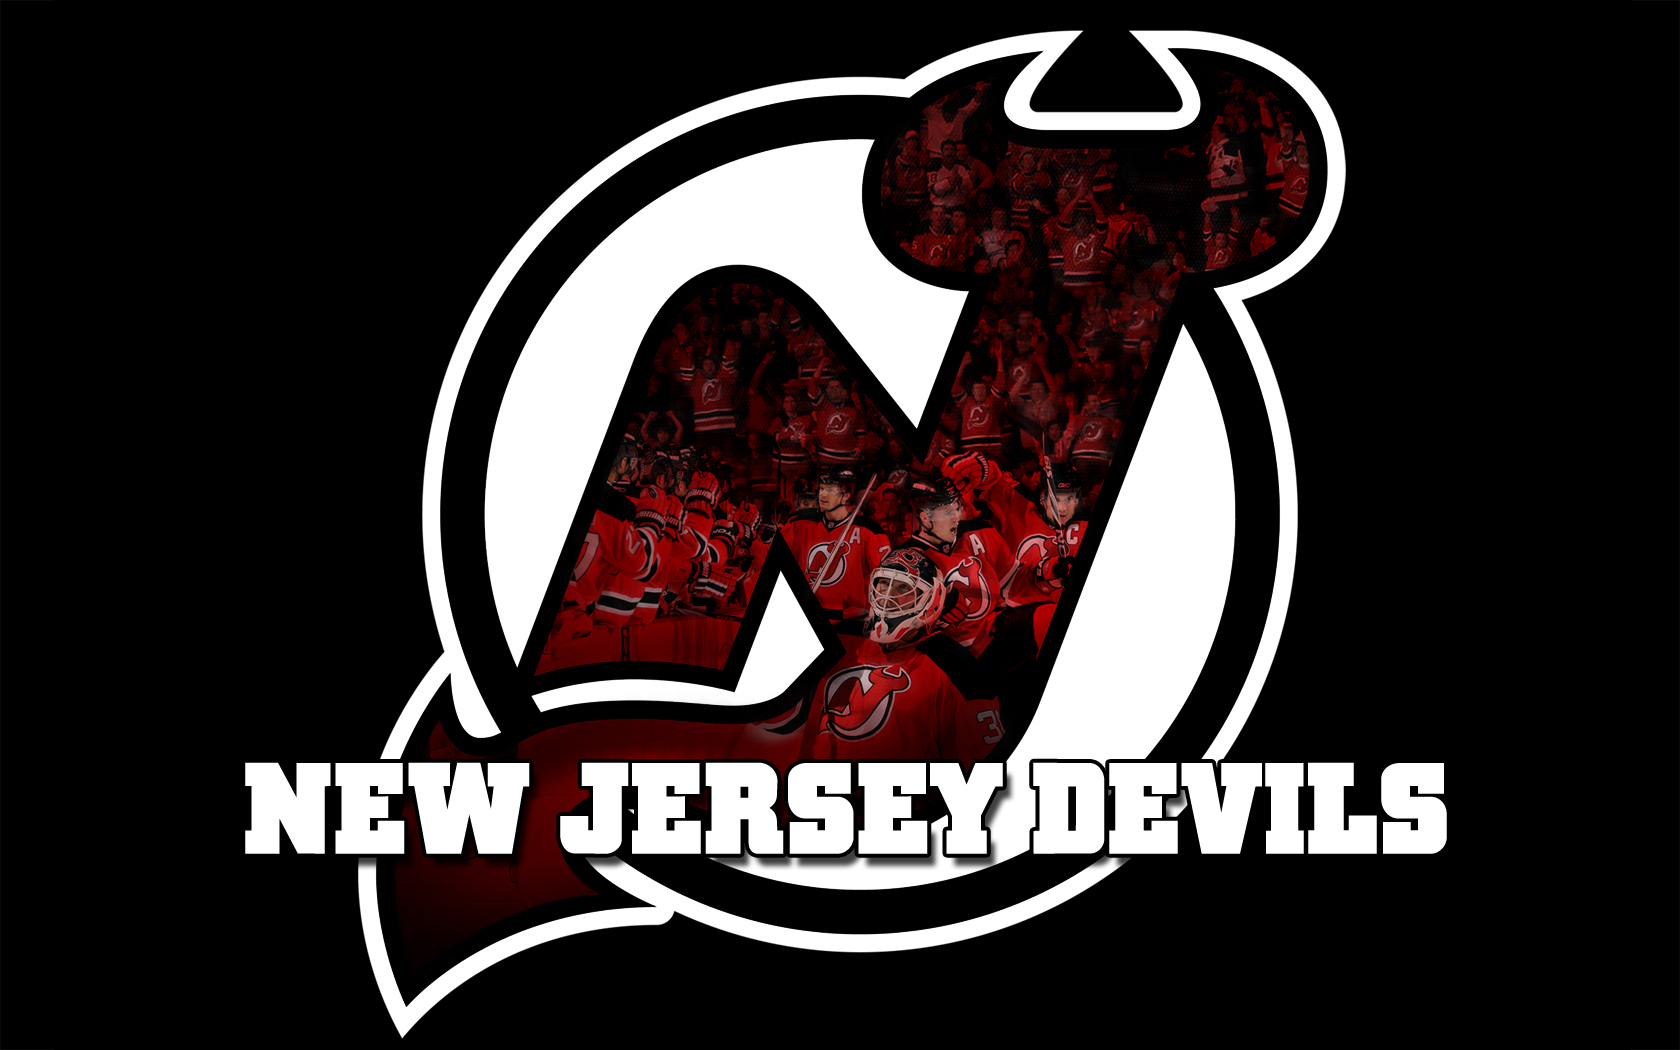 new jersey devils schedule 2015